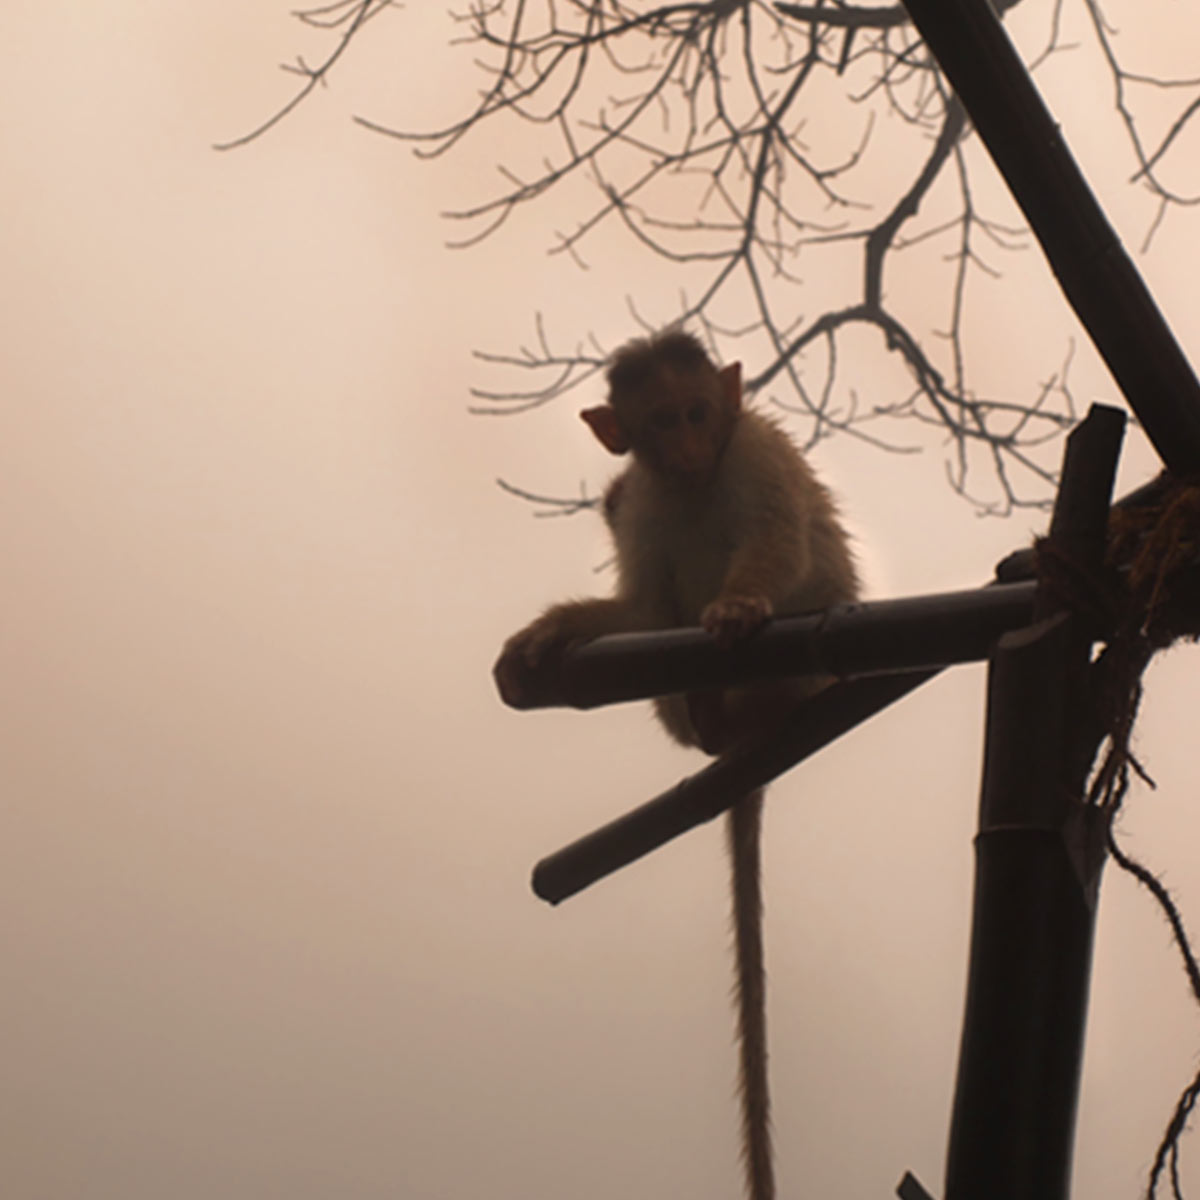 Amboli maharashtra monkey sitting with fog in the background